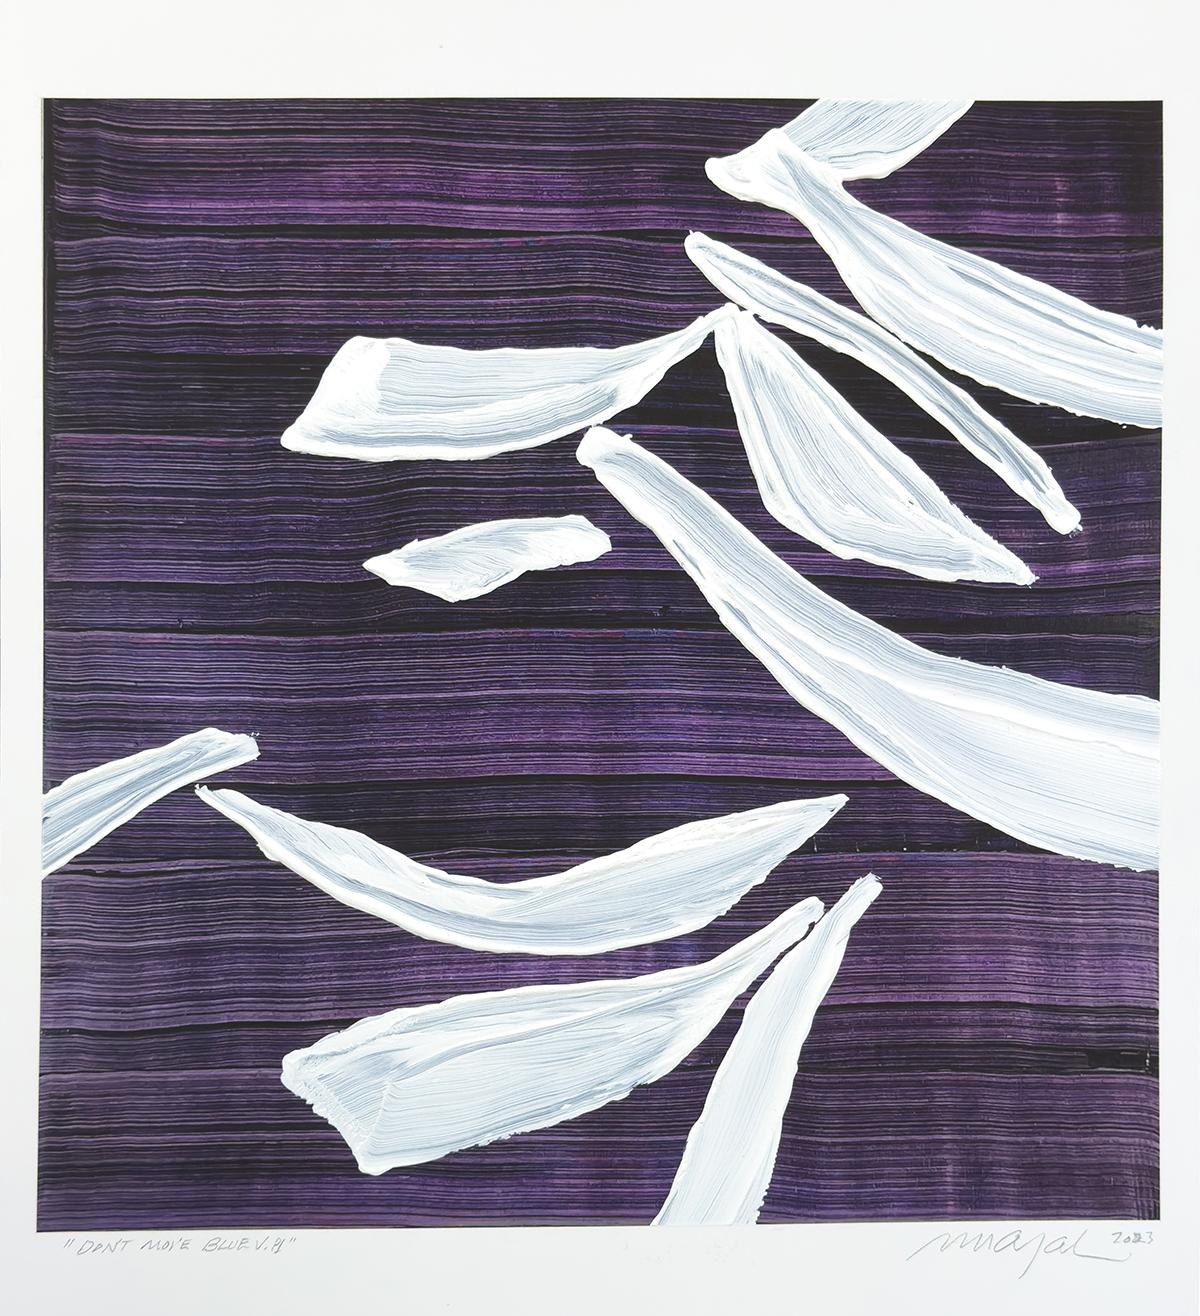 Mixed media, textured, white acrylic paint on purple photographic print - Mixed Media Art by Ricardo Mazal